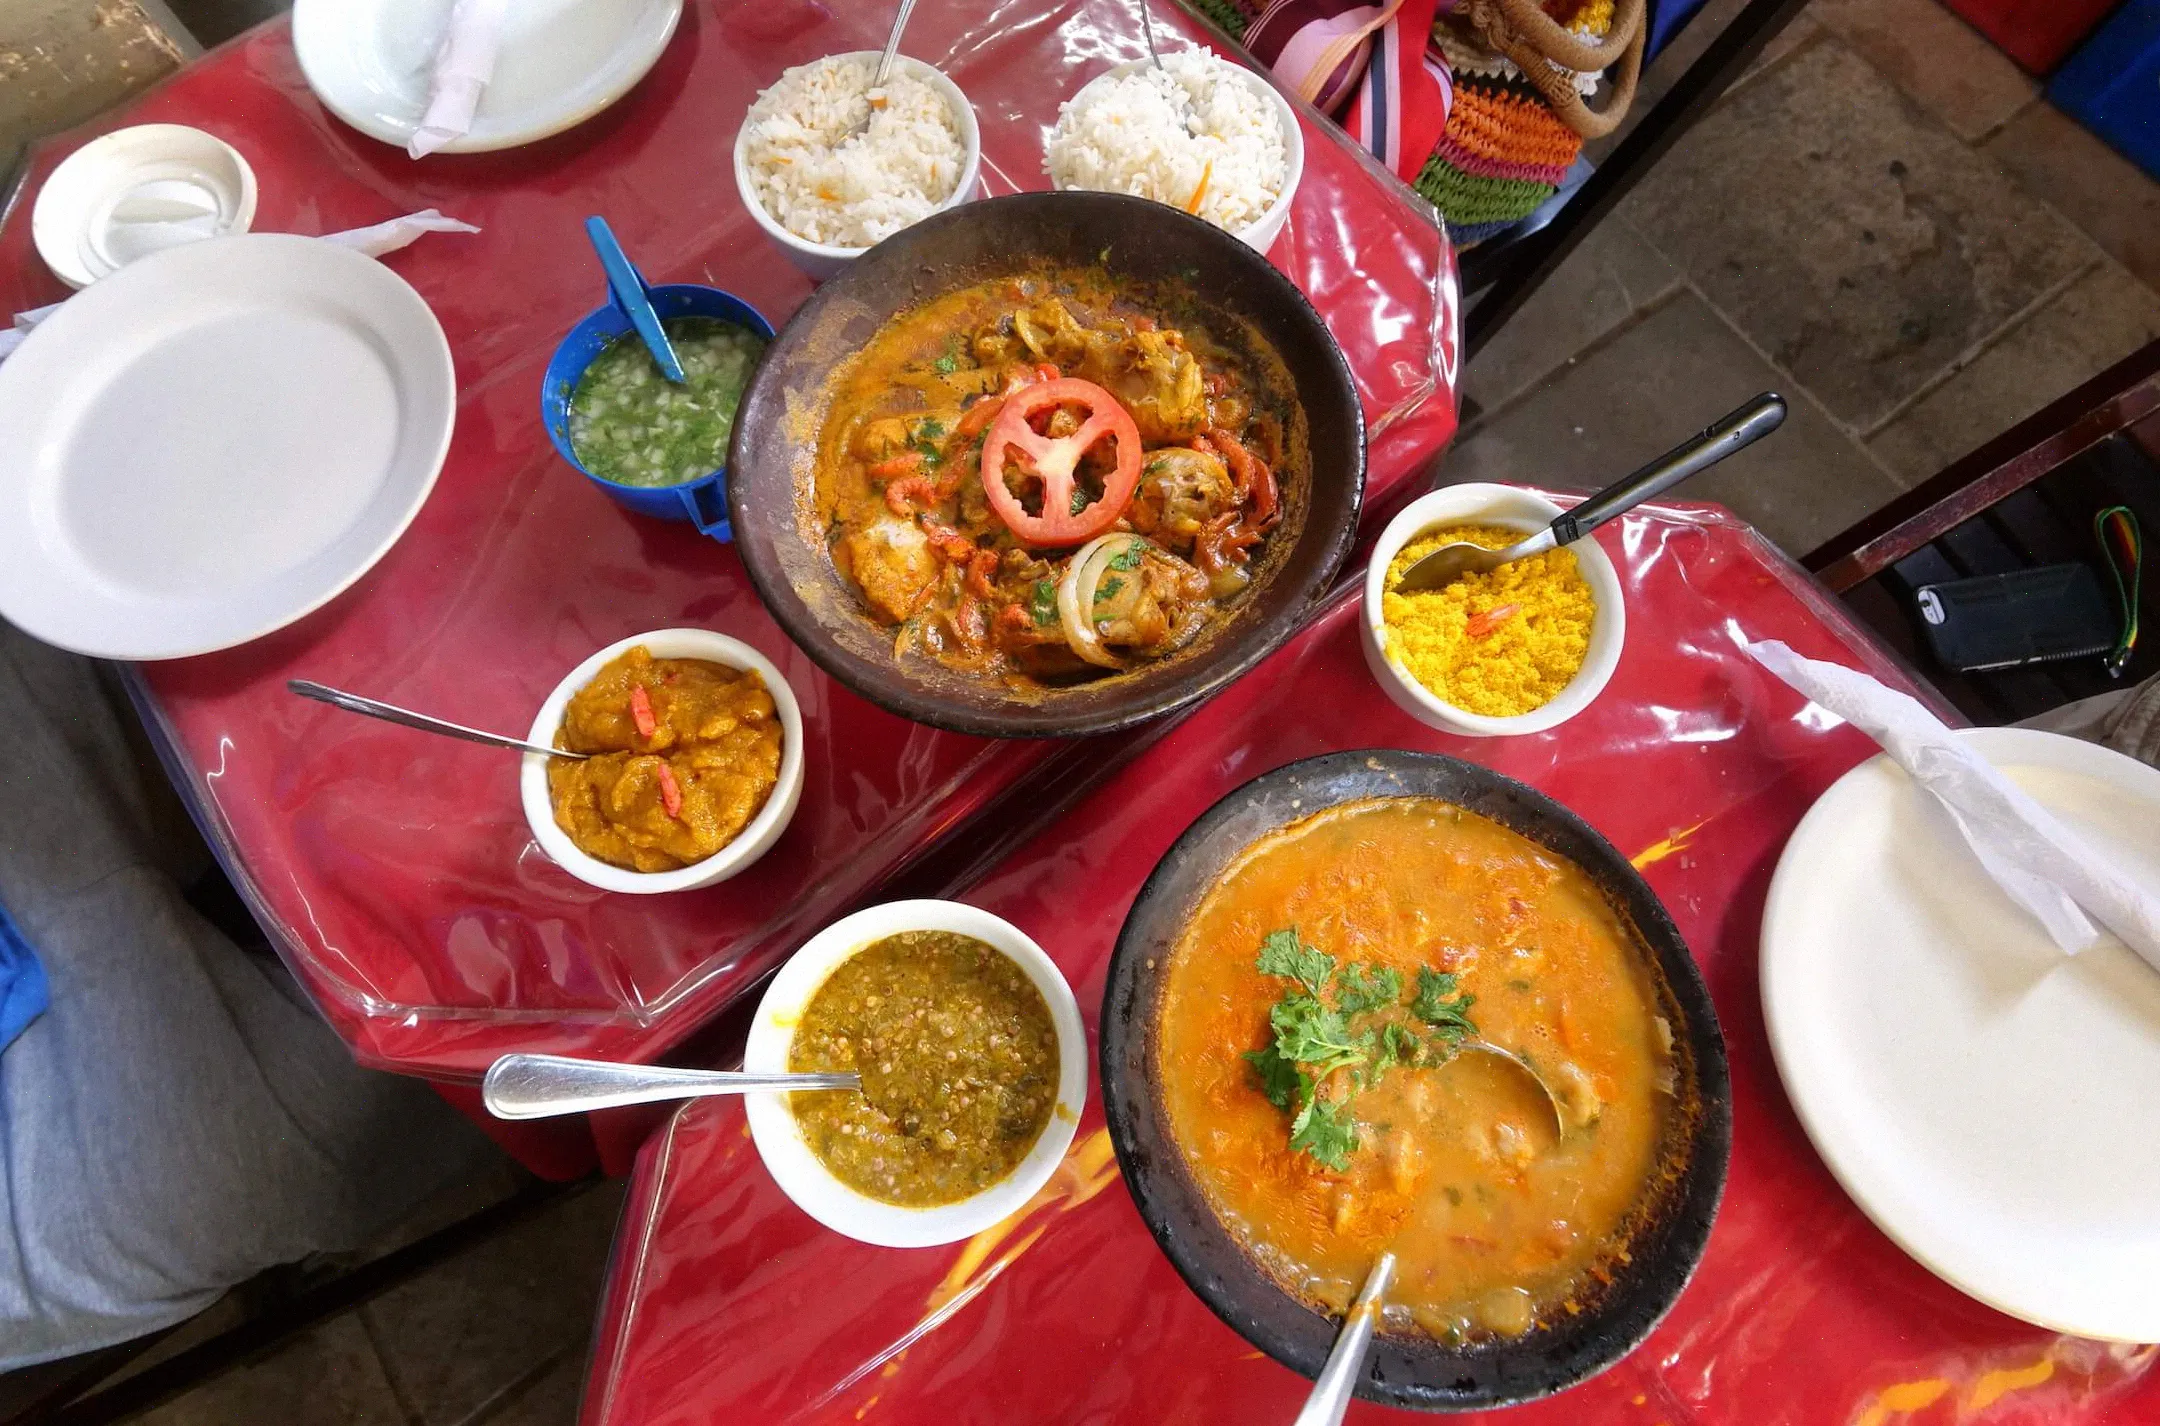 Asegúrate de comer tanta comida local salvadoreña como puedas, esta parte de Brasil está llena de deliciosos platos locales afrobrasileños.